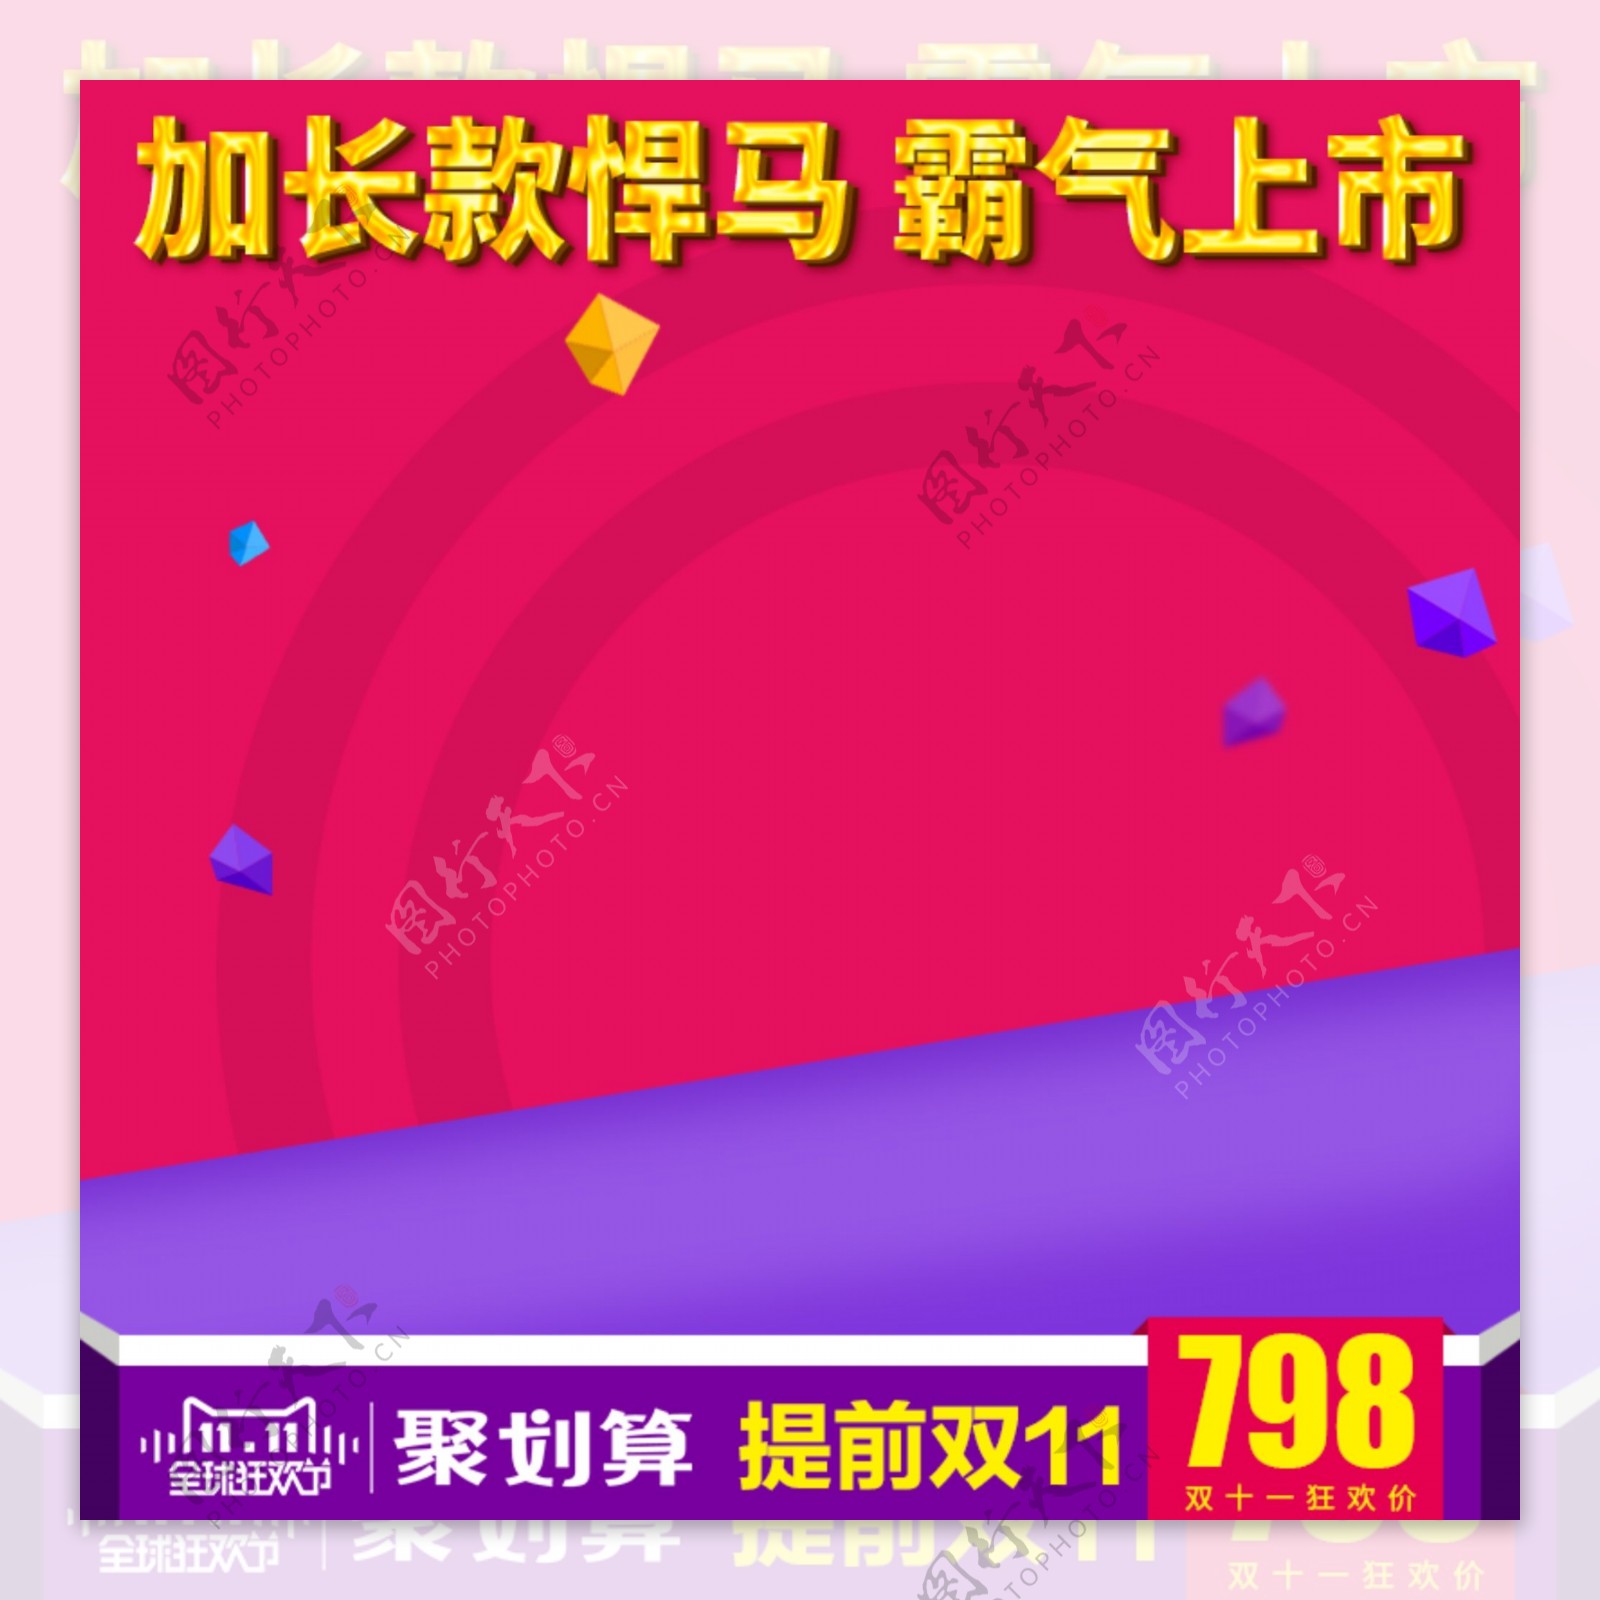 紫红喜庆双十一淘宝电商主图直通车图双11